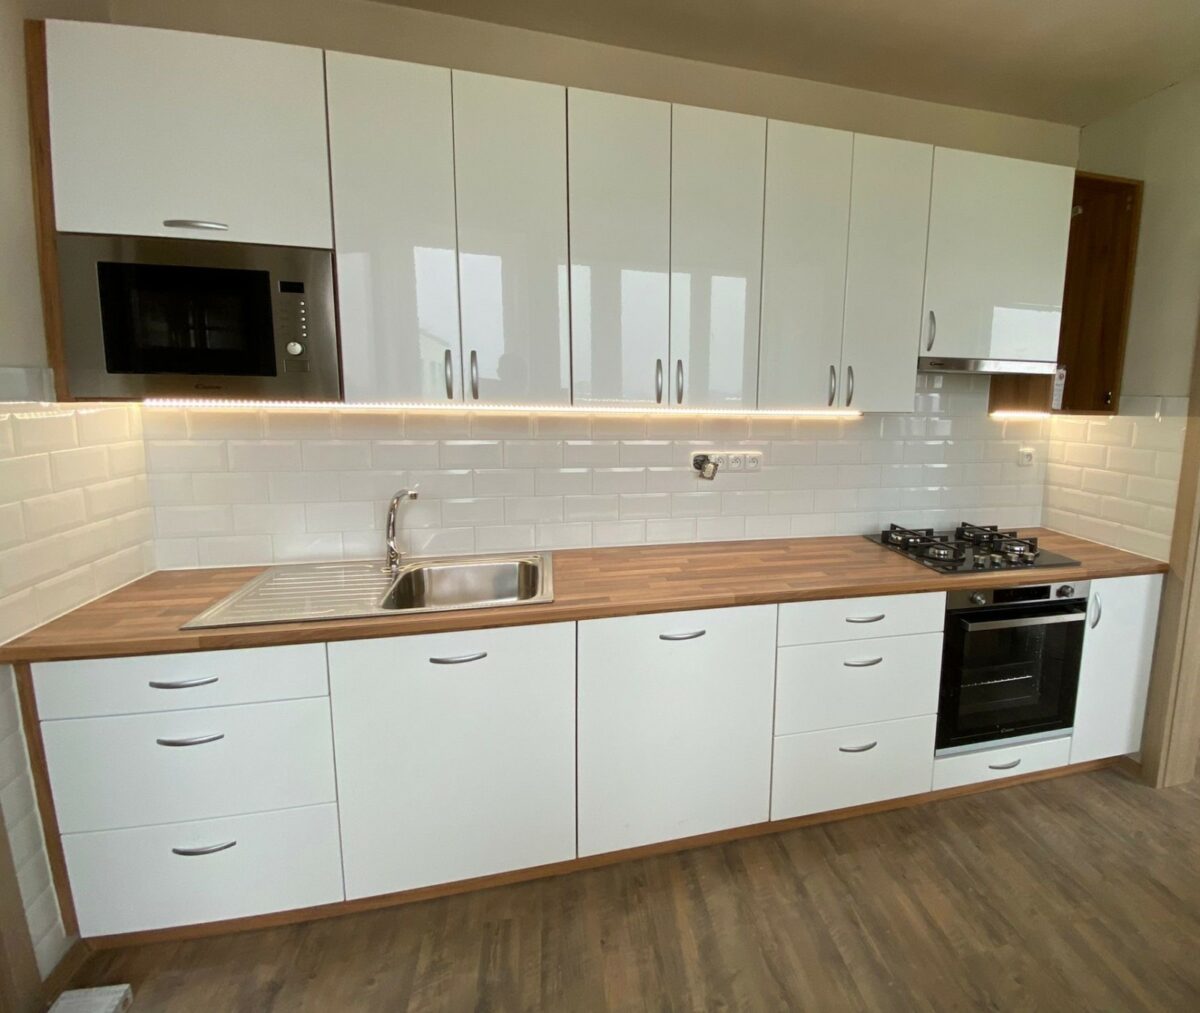 Bílá kuchyně v přírodním stylu s dřevěnými prvky (Chomutov)